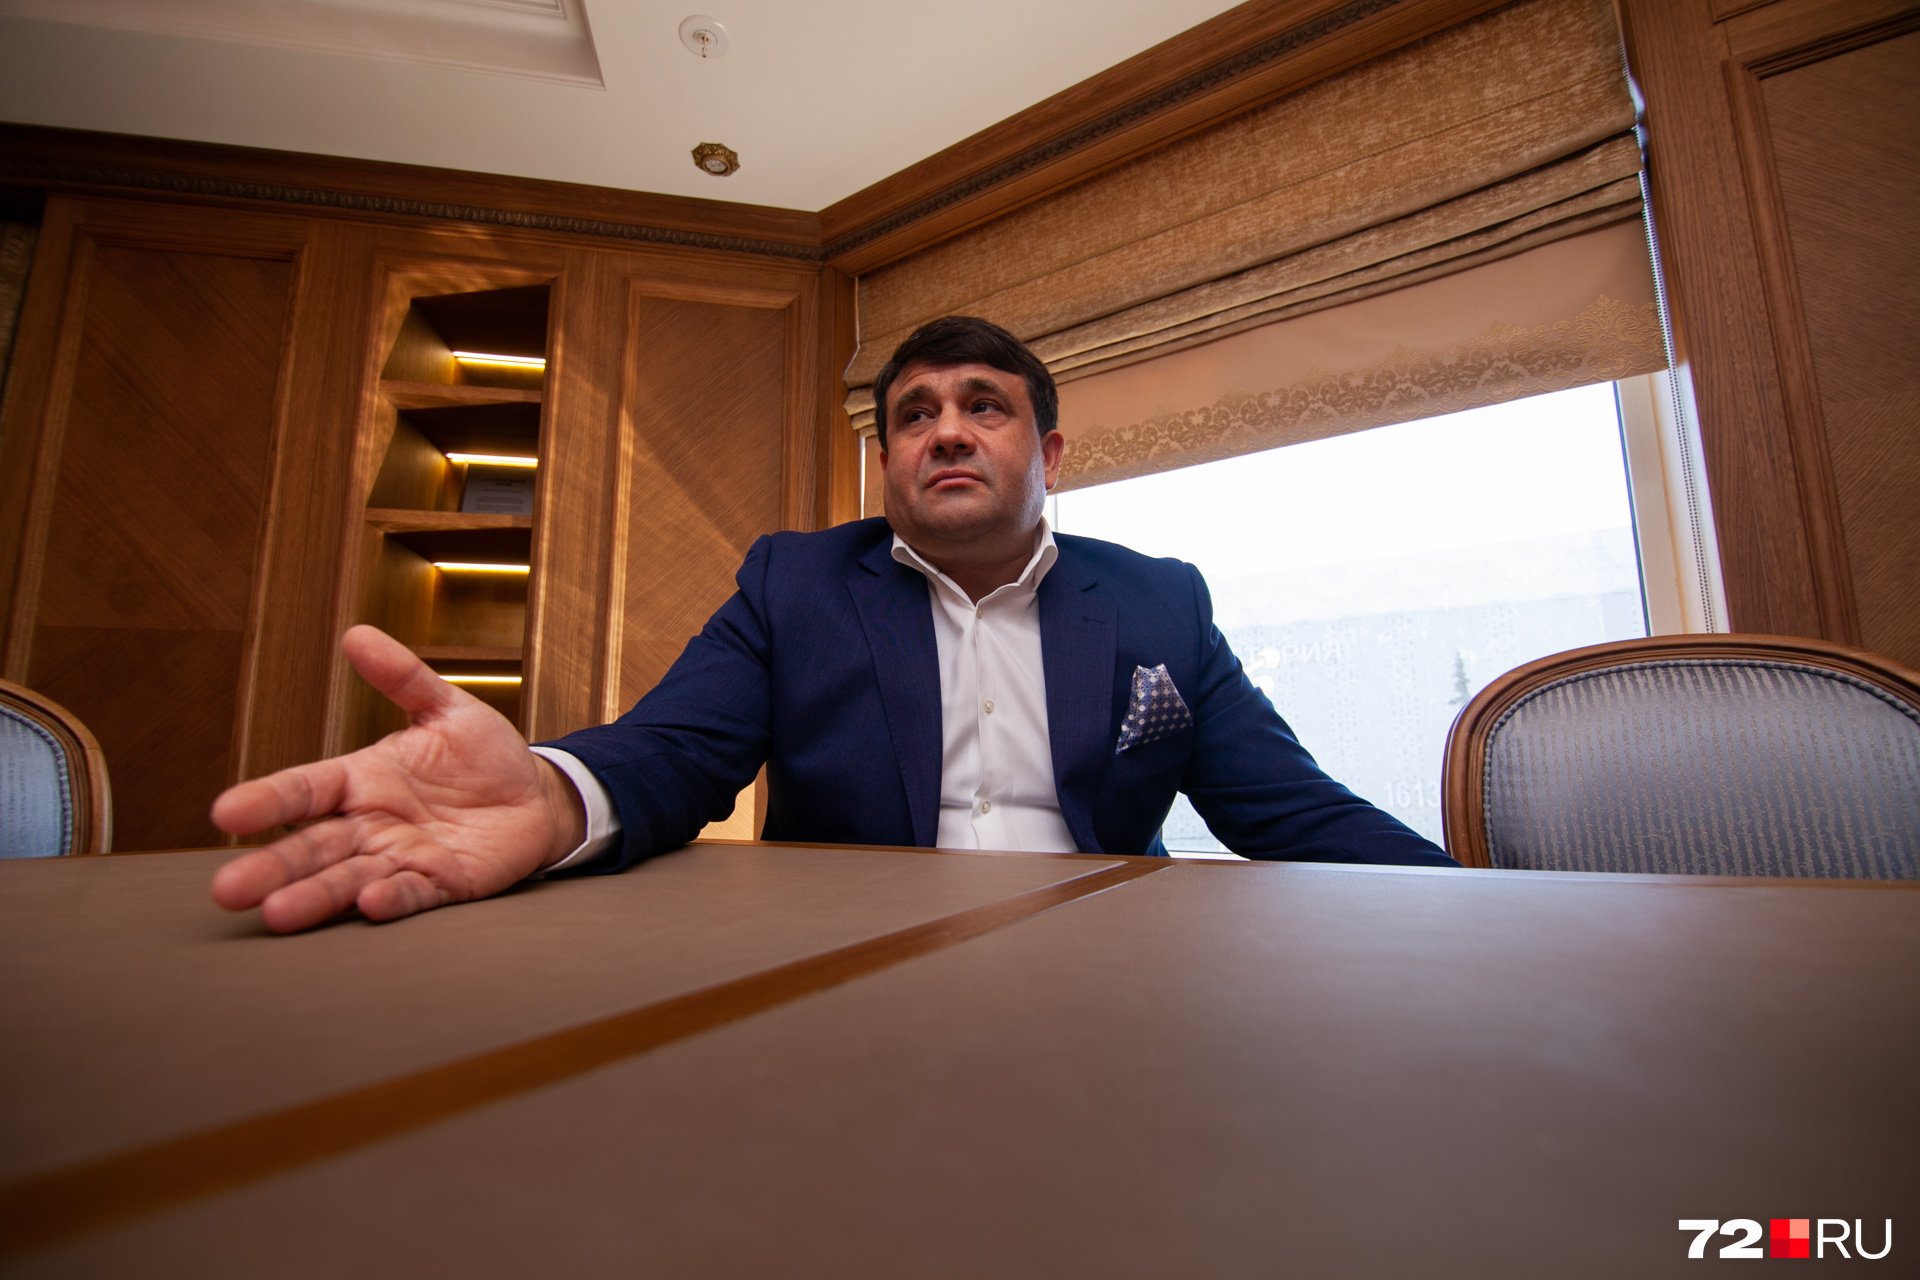 Пискайкин является бессменным лидером регионального отделения «Справедливая Россия» в Тюменской области